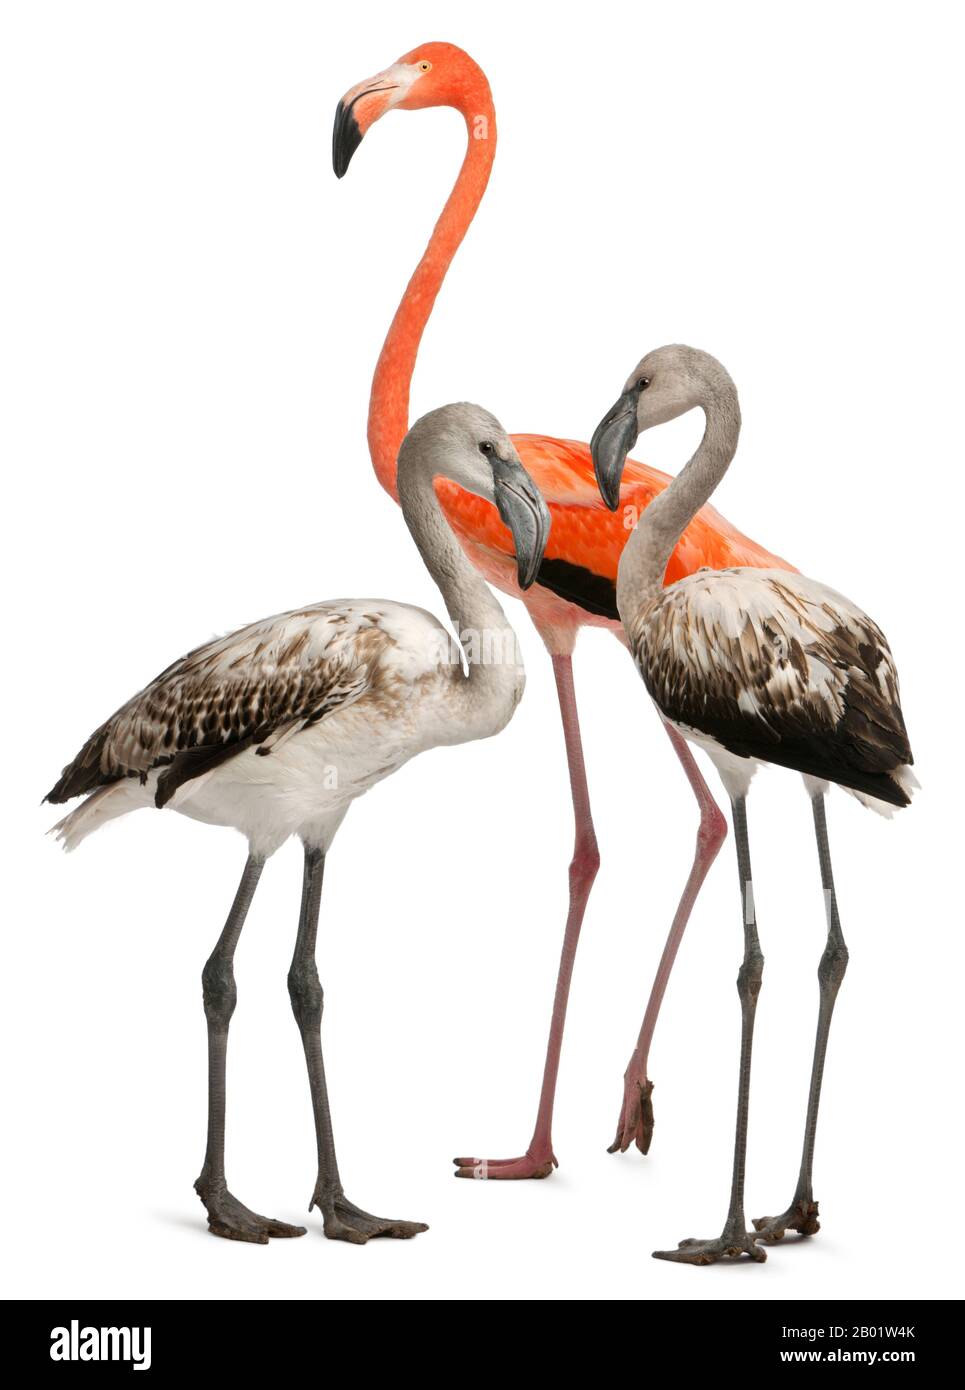 Flamingo maggiore, Fenicopterus roseus, 8 mesi, e Flamingo americano, Fenicopterus ruber, 10 anni, di fronte a sfondo bianco Foto Stock